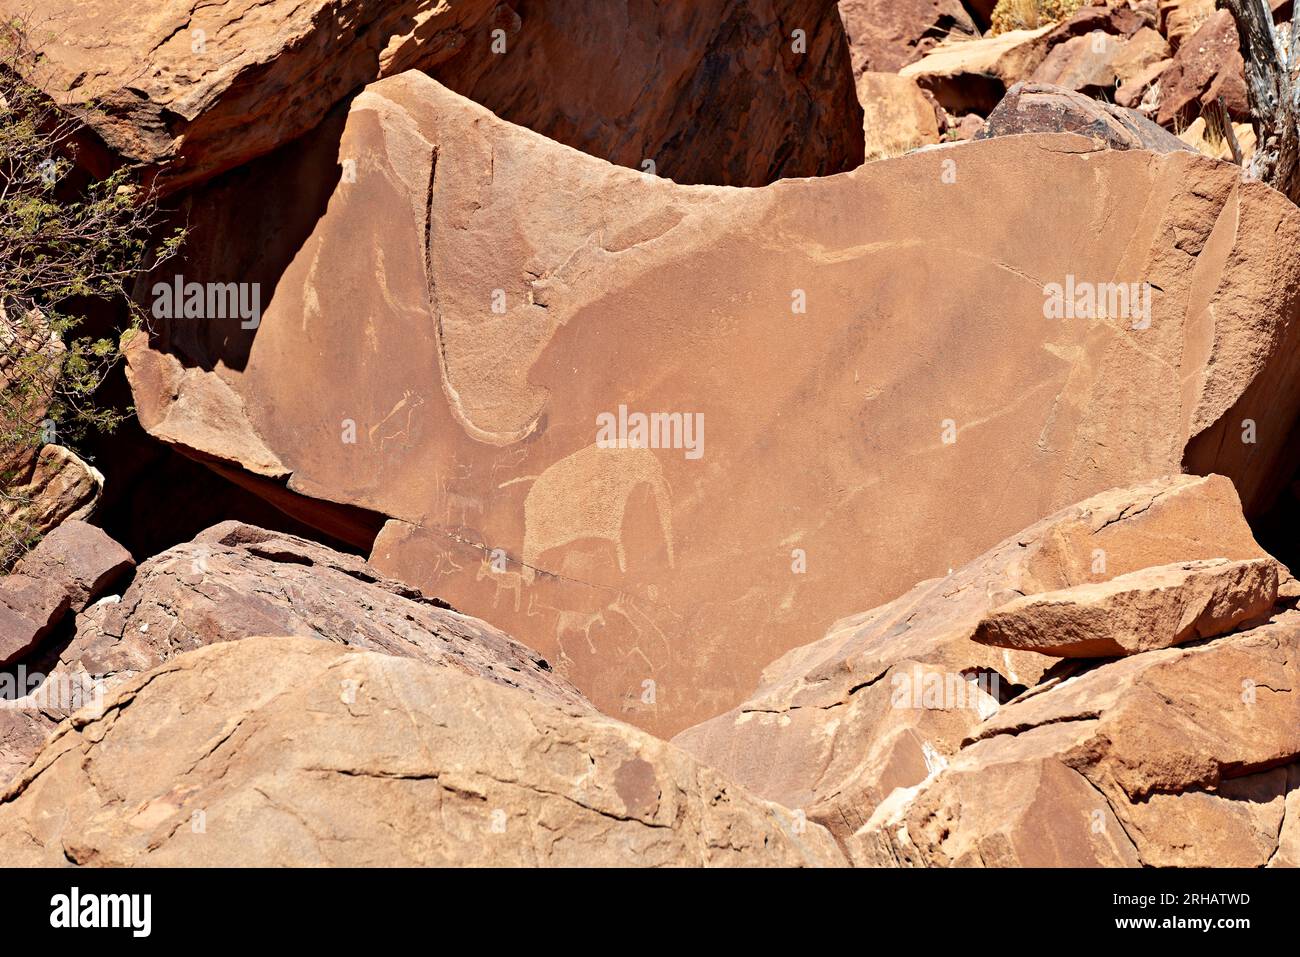 Namibia. Incisione rupestre preistorica nel sito archeologico di Twyfelfontein, regione di Kunene Foto Stock